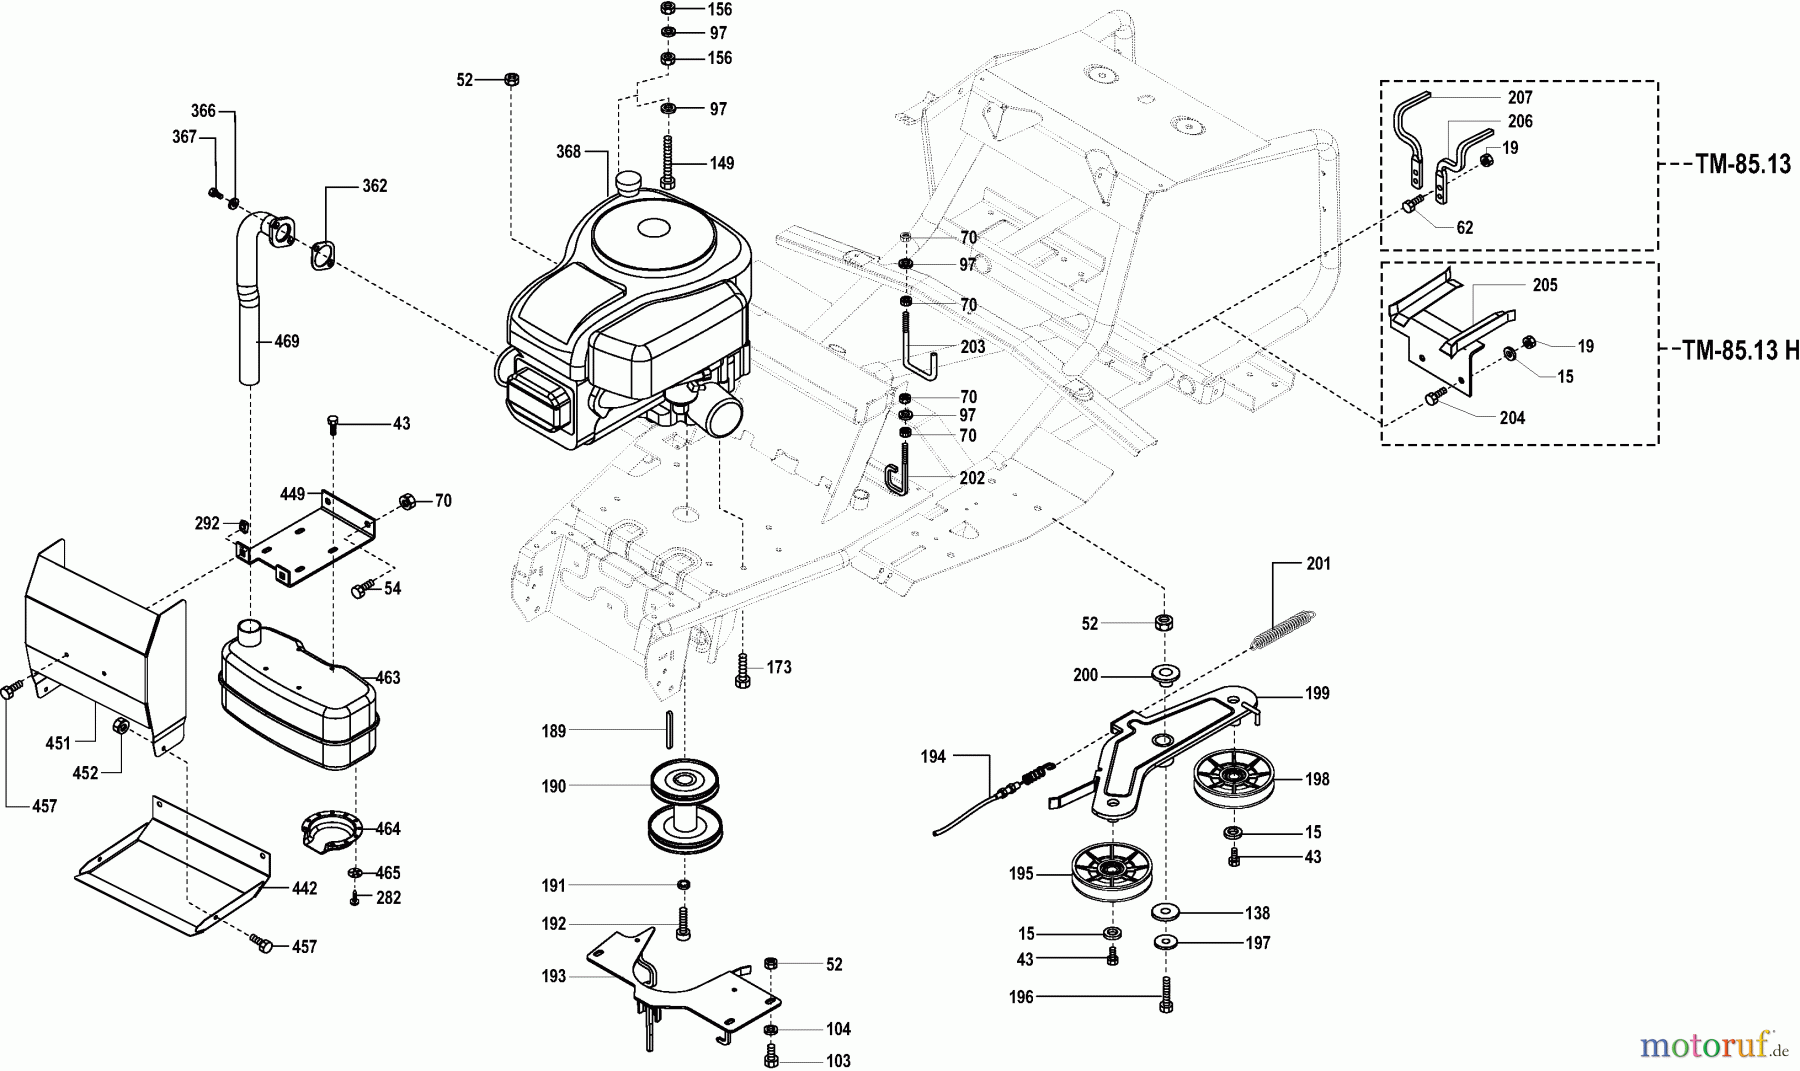  Dolmar Rasentraktoren TM-85.13 H TM-85.13 H (2004) 5  MOTOR